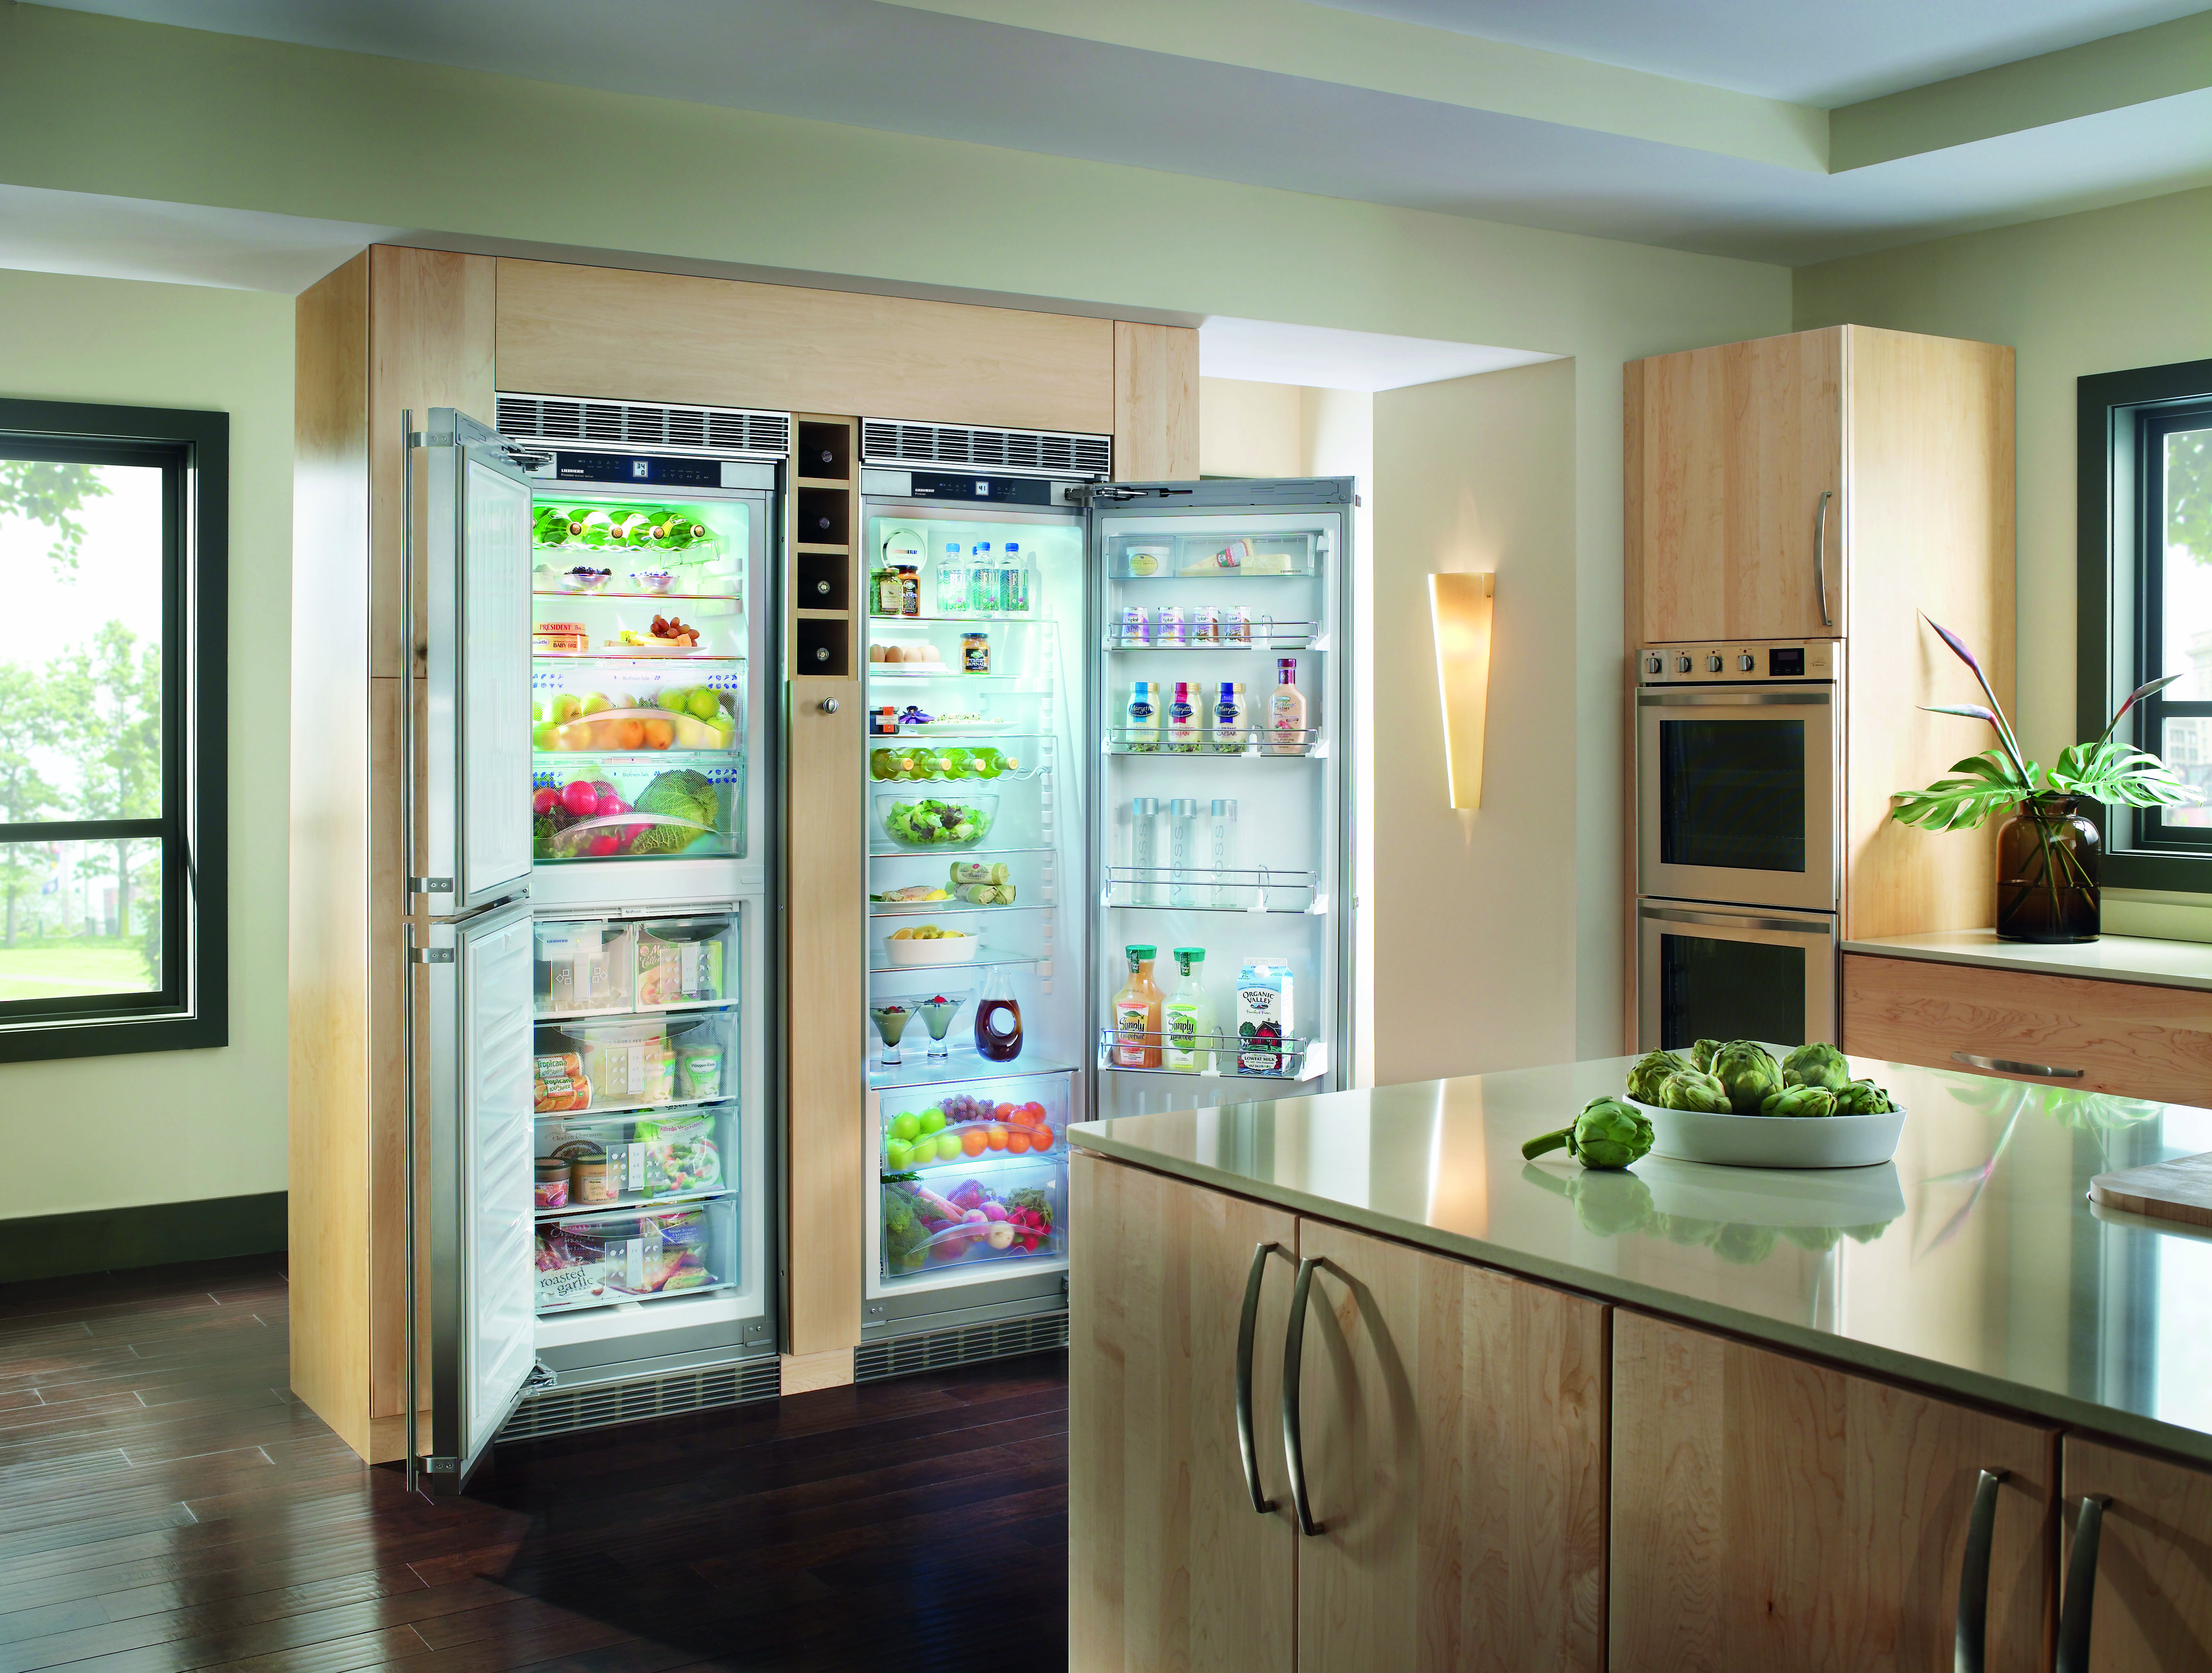 Можно ли встроить обычный холодильник в кухонный шкаф?